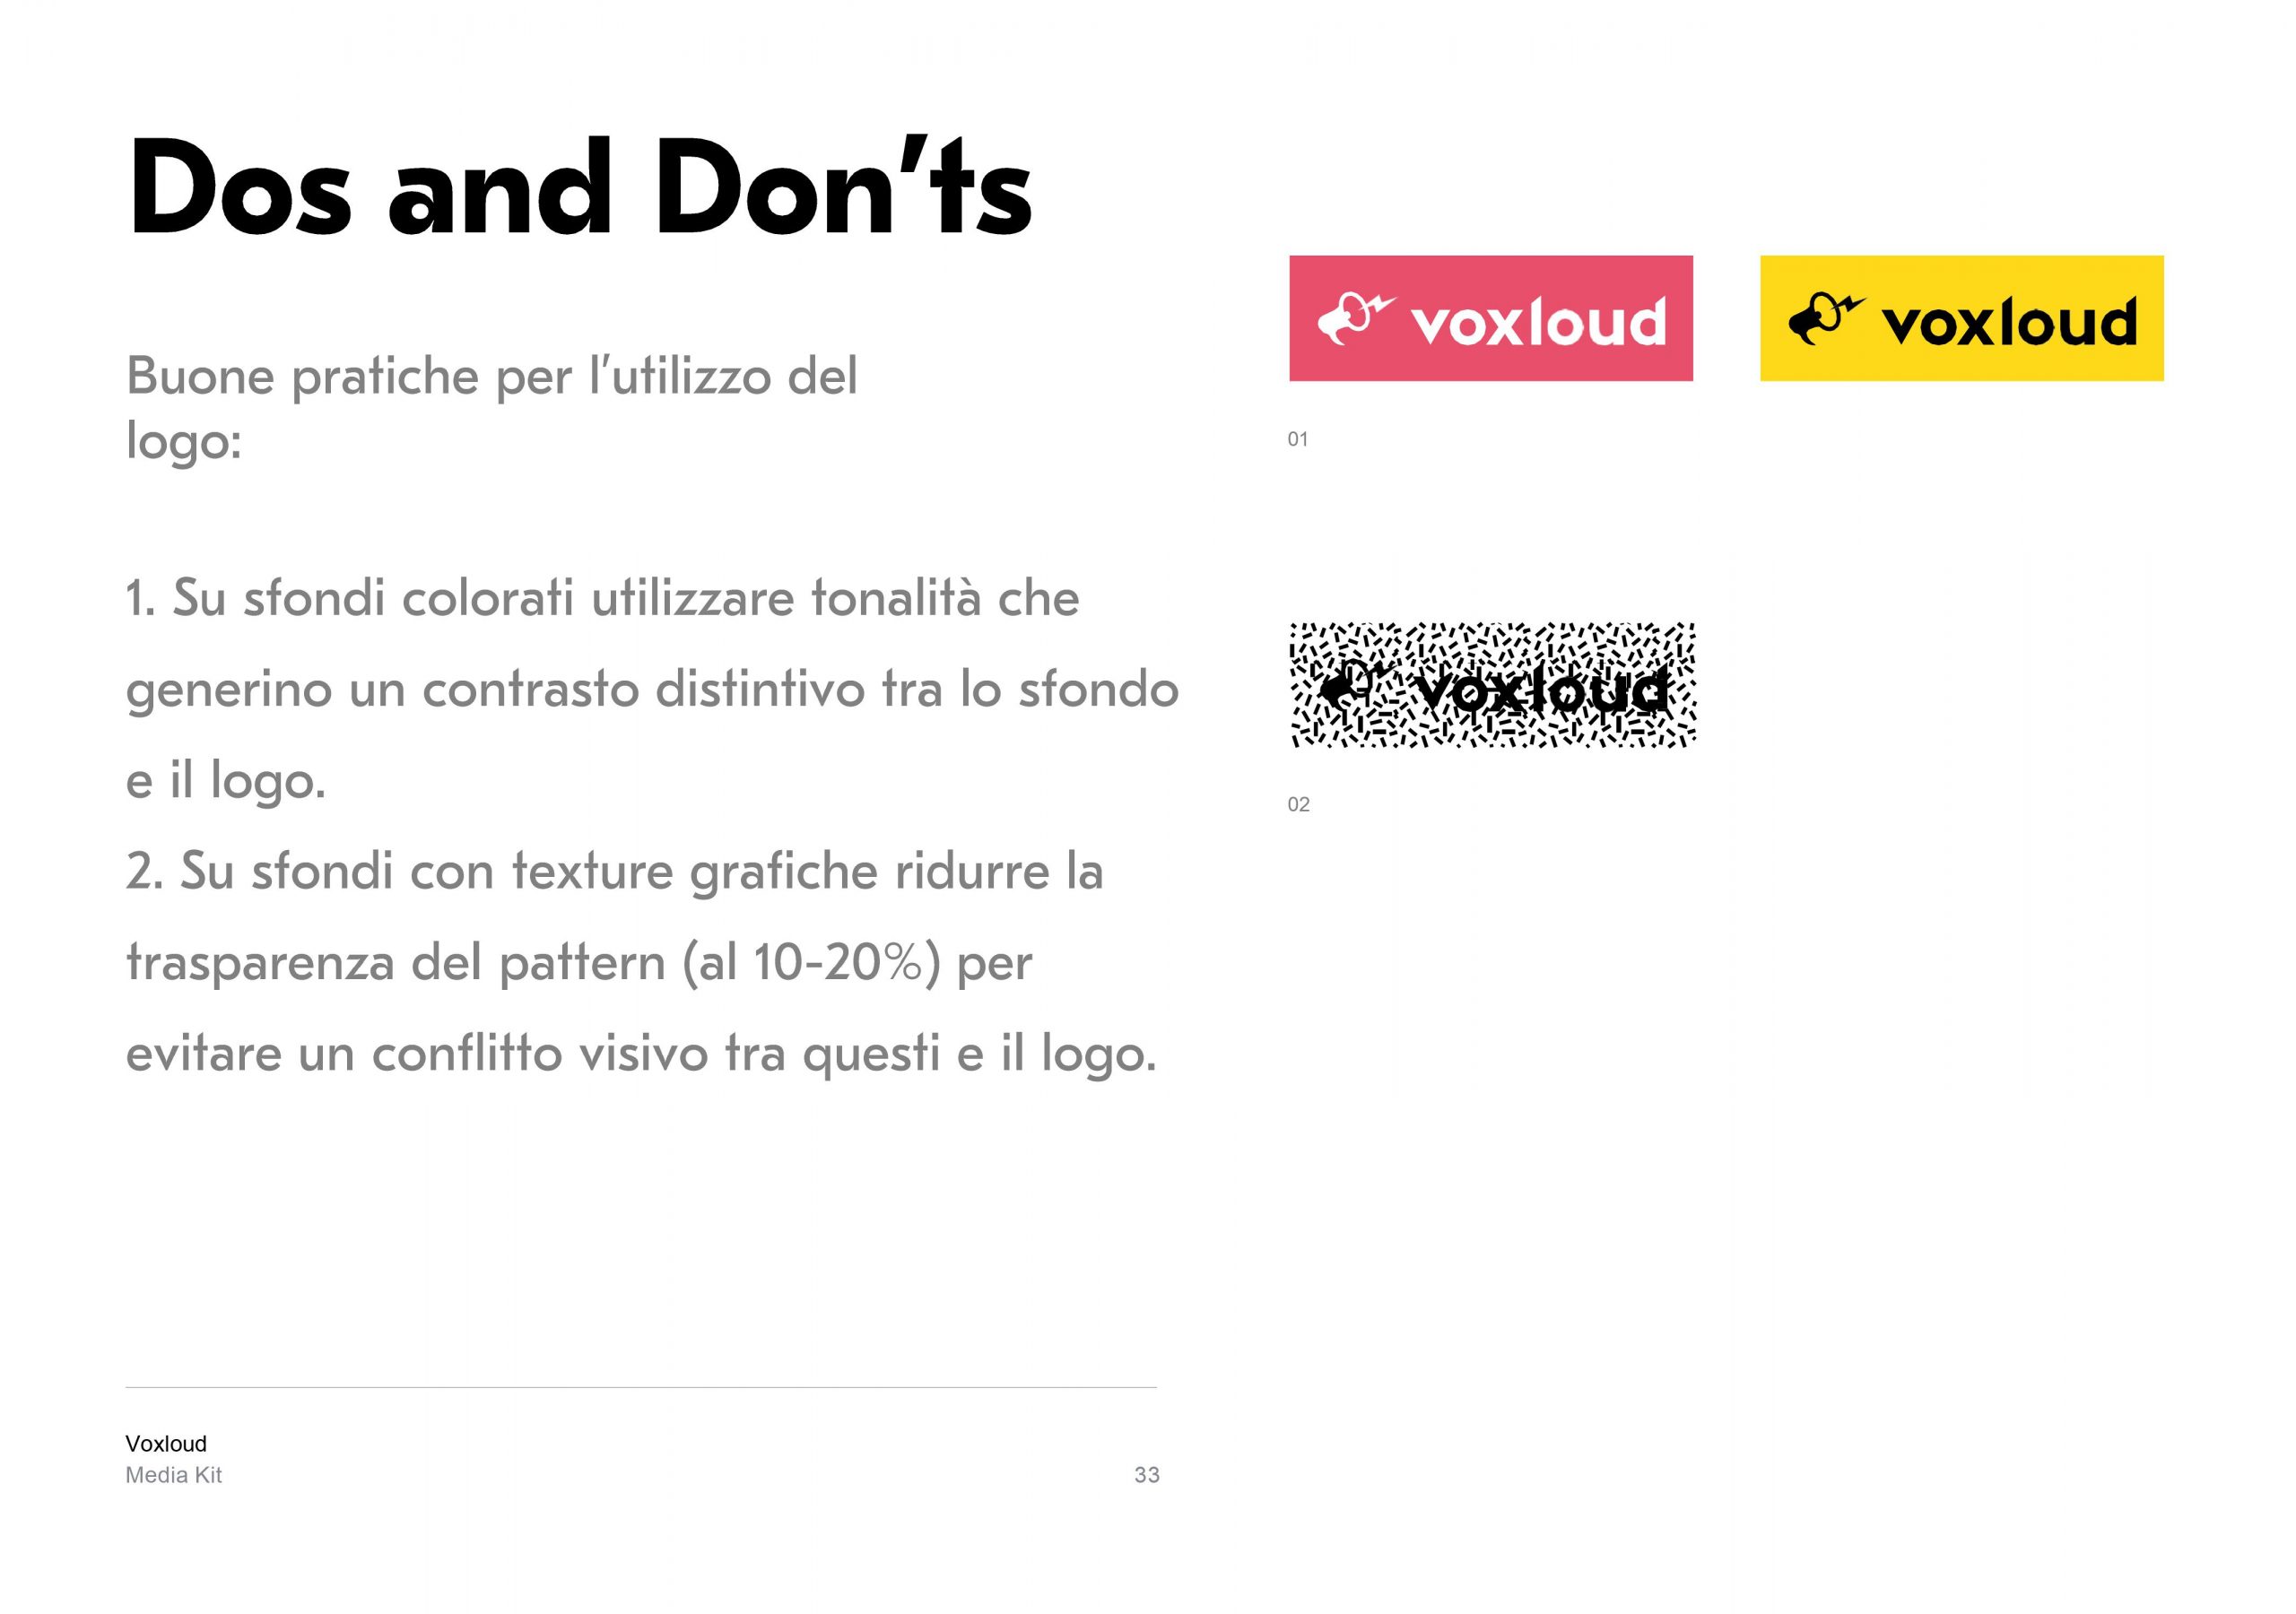 Voxloud Media Kit_IT_33